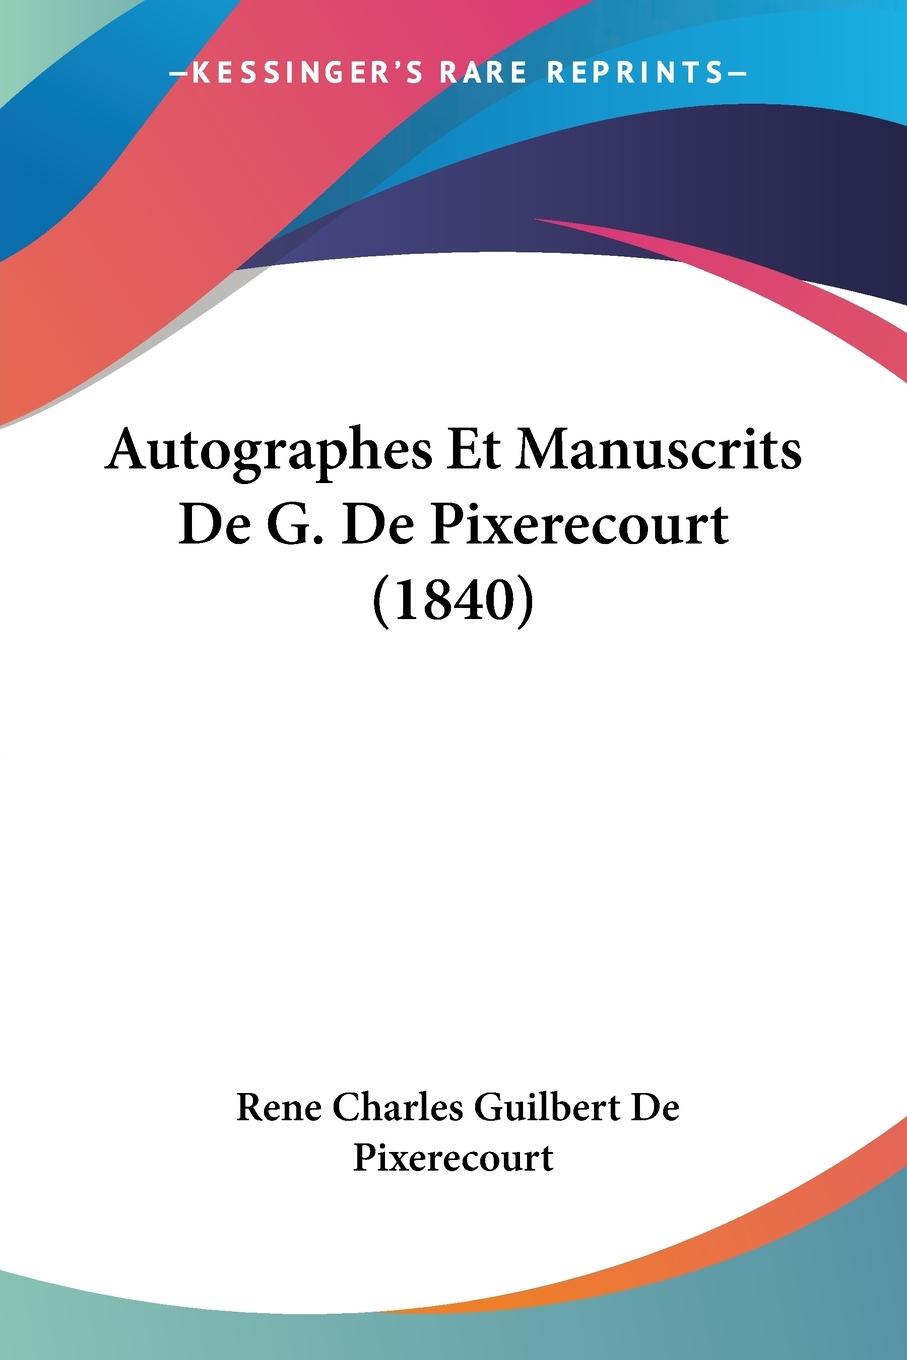 Autographes Et Manuscrits De G. De Pixerecourt (1840) - De Pixerecourt, Rene Charles Guilbert